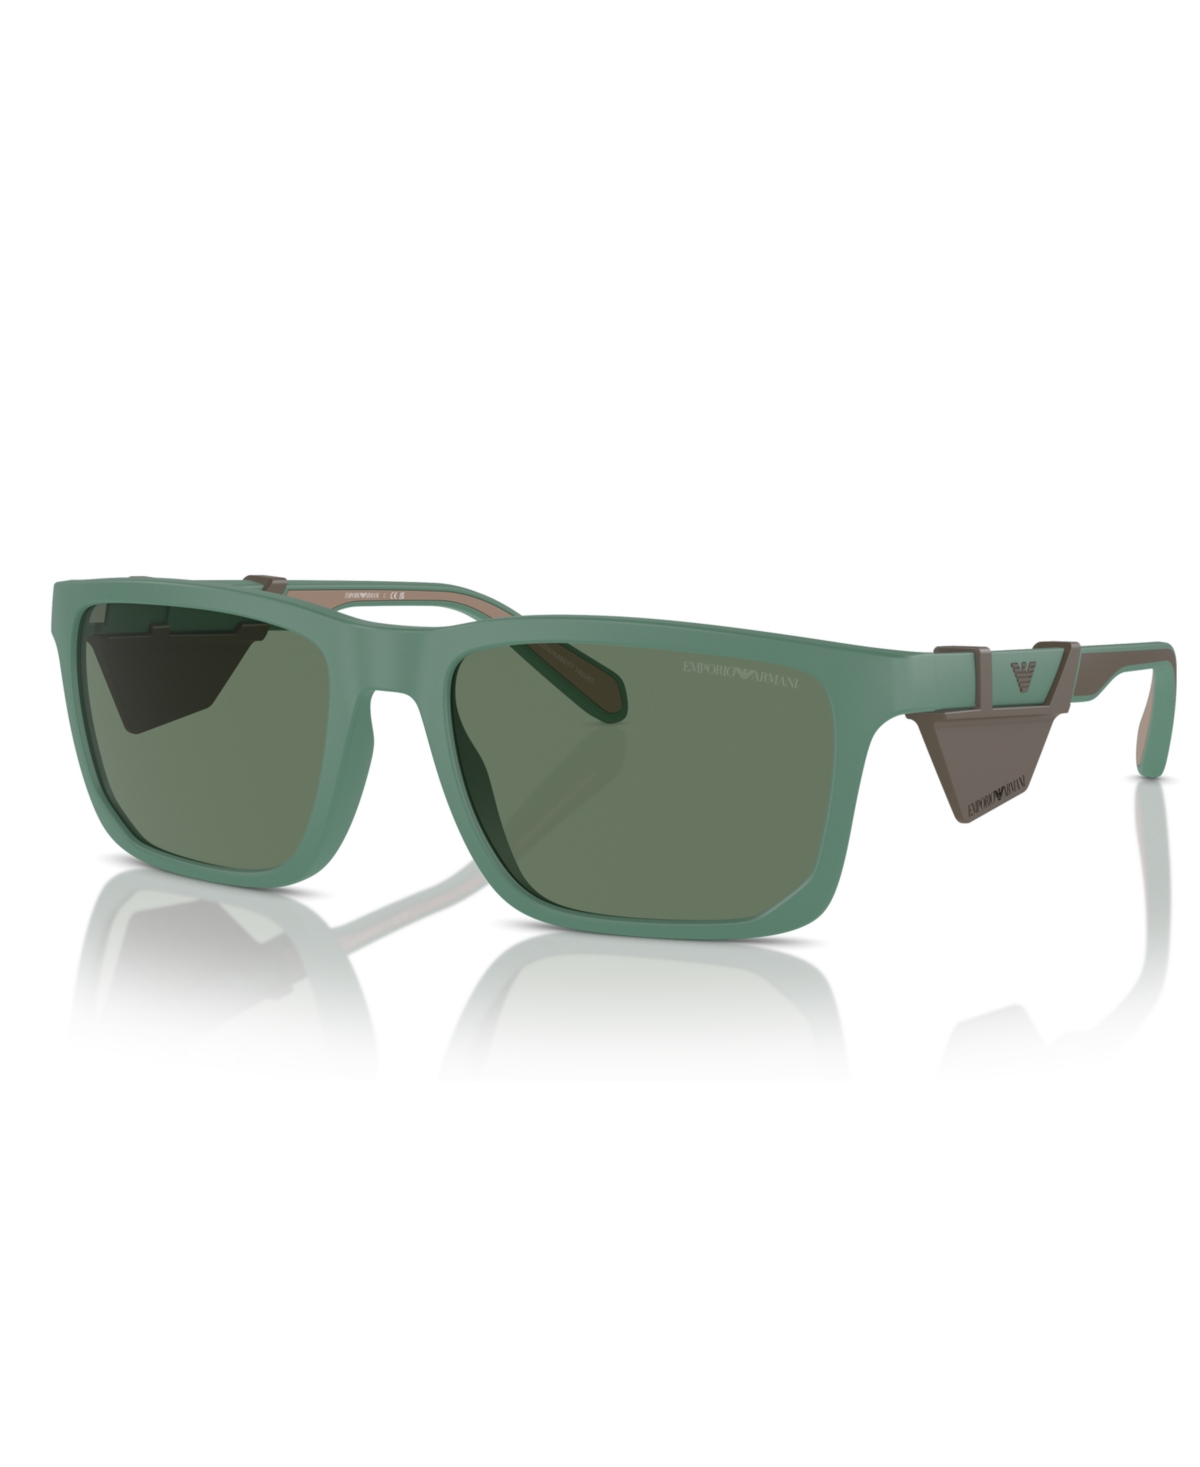 Emporio Armani Men's Sunglasses, Ea4219 In Matte Alpine Green